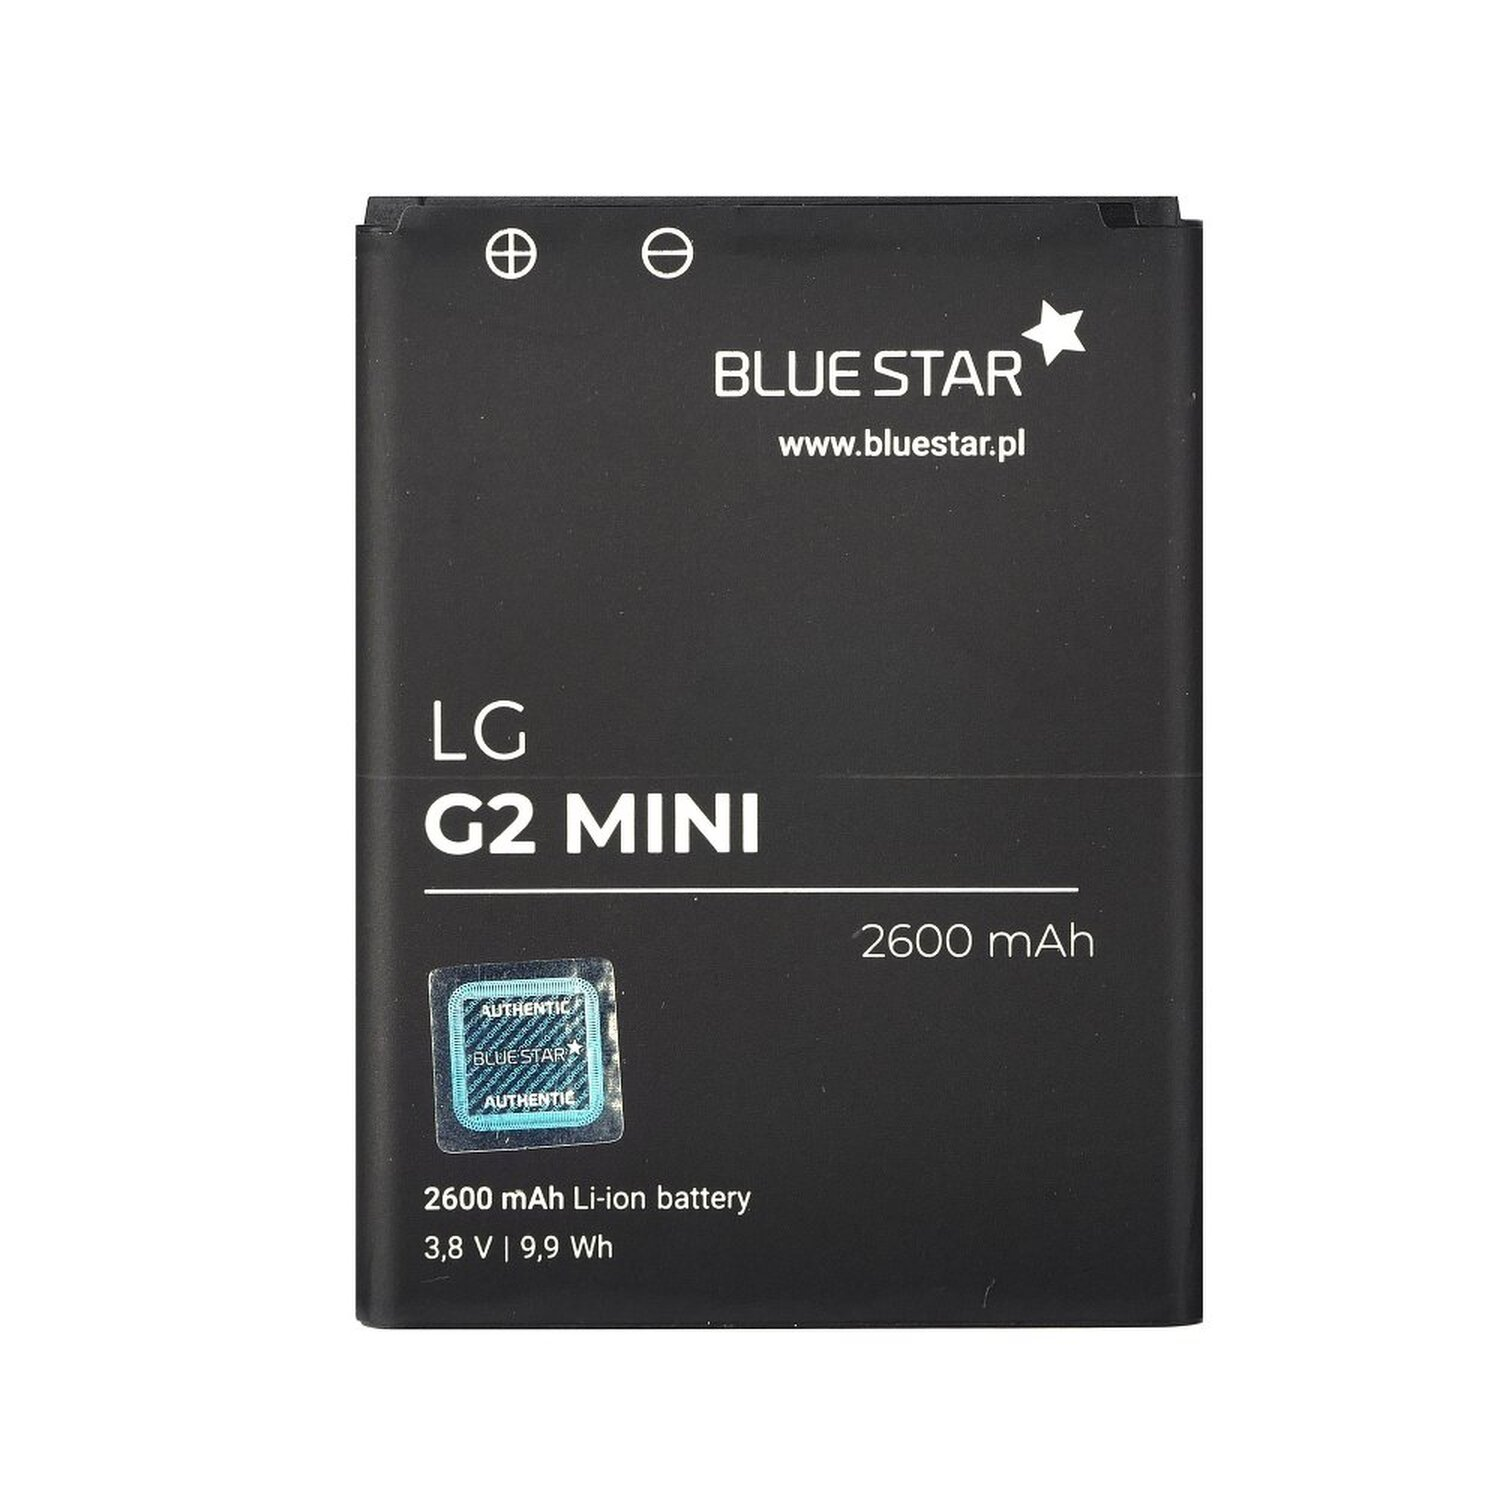 G2 Li-Ion für Akku LG BLUESTAR Handyakku Mini